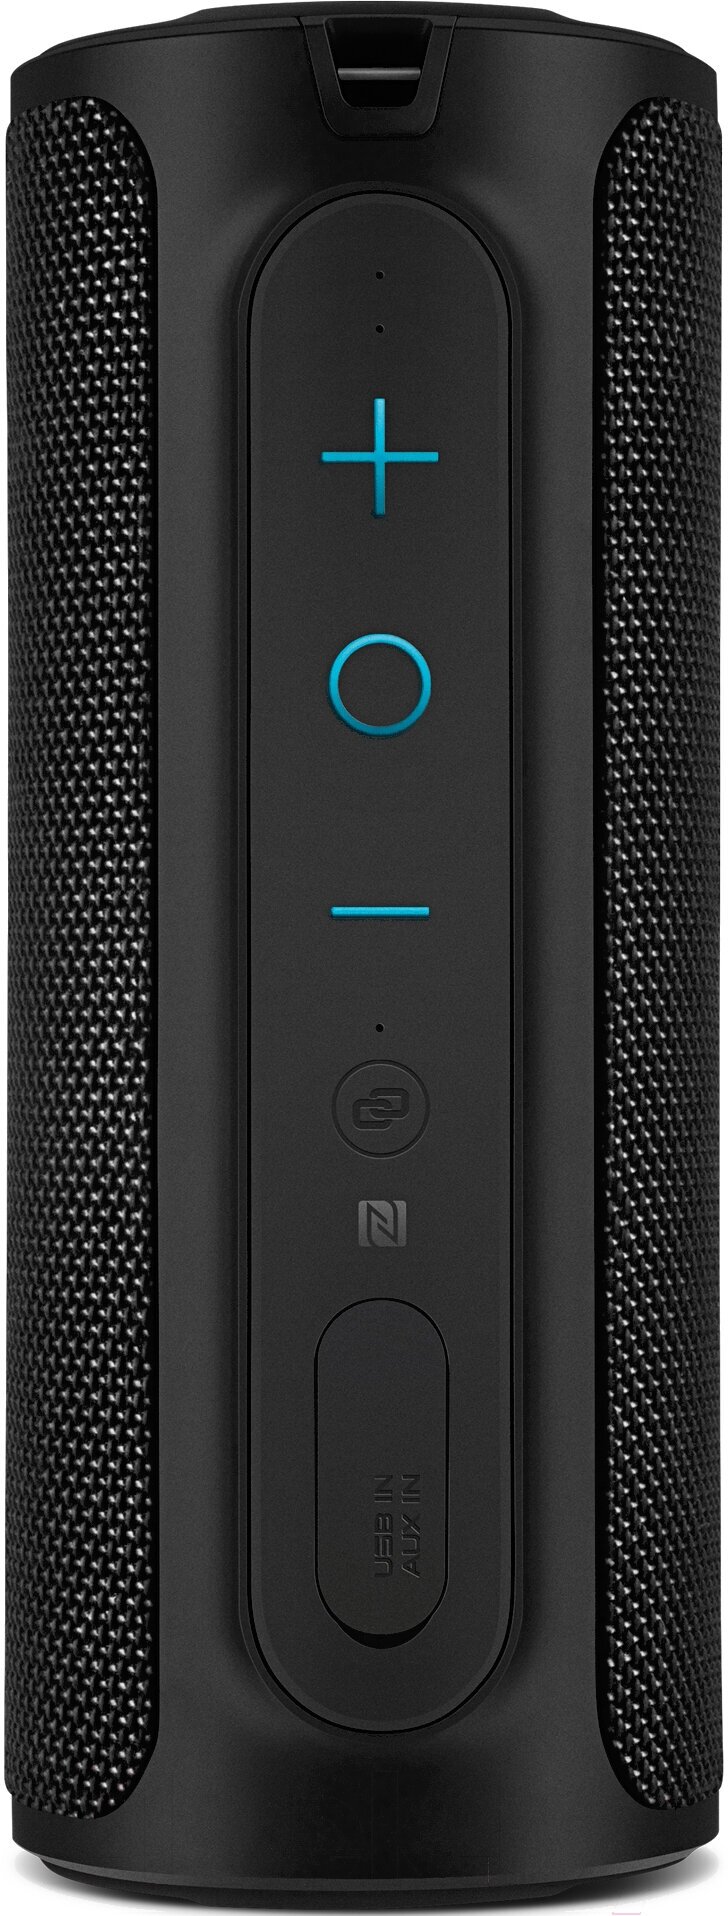 Портативная беспроводная Bluetooth колонка SVEN PS-300 черный мощность 2x12 Вт (RMS) влагозащищённая (IPx7) TWS встроенный аккумулятор